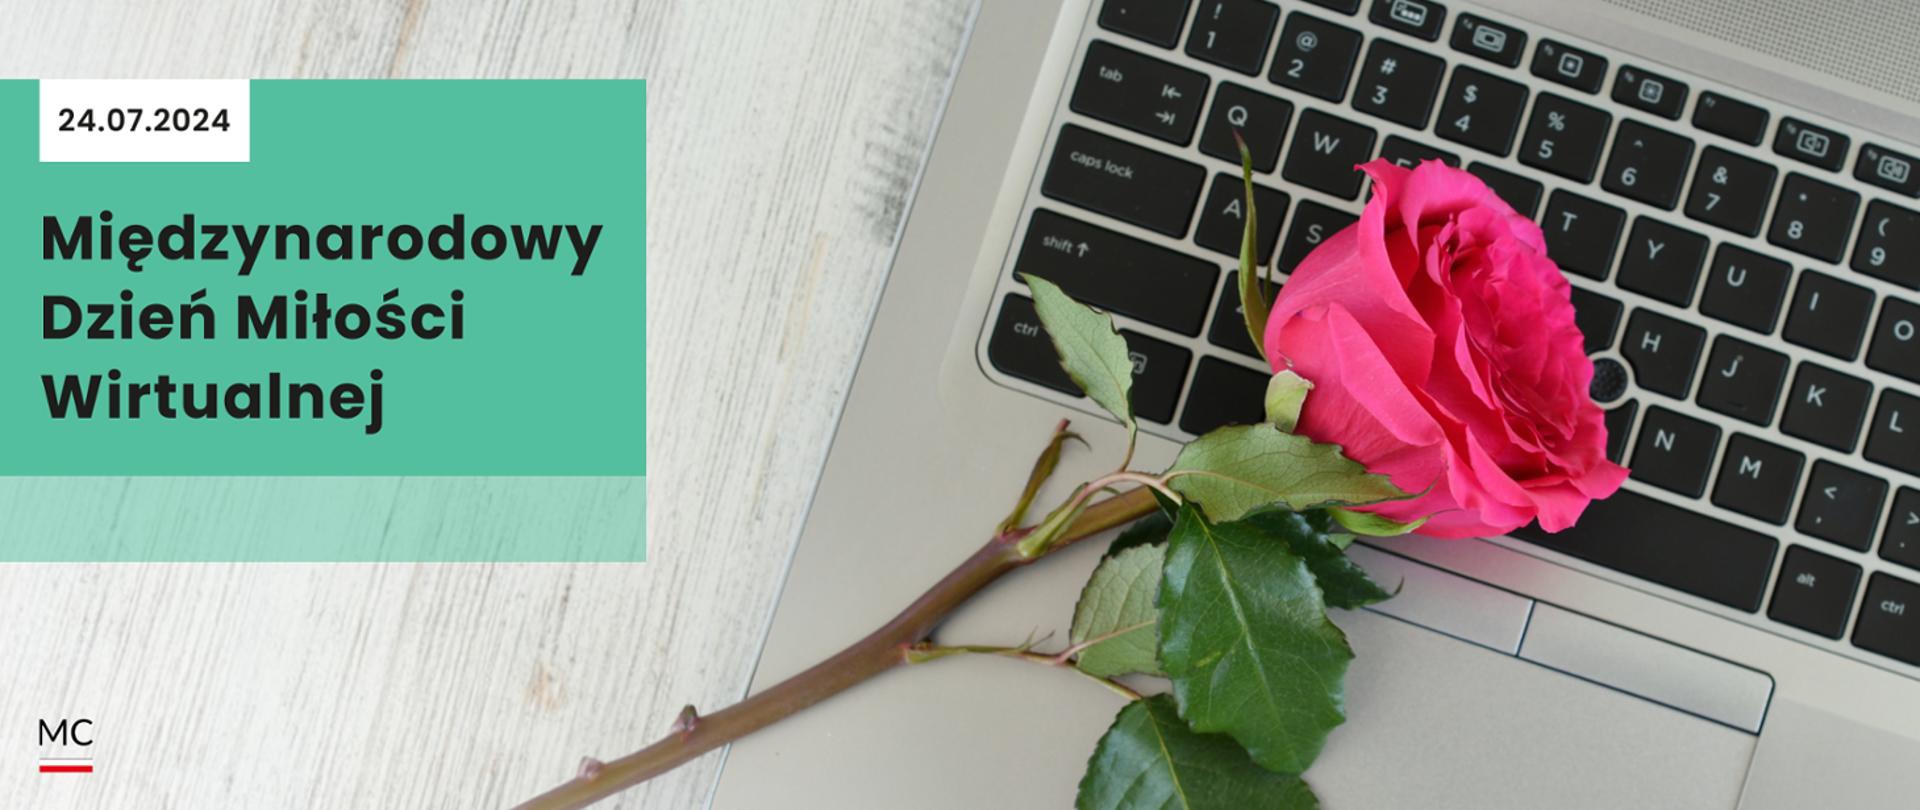 Napis: Międzynarodowy Dzień Miłości Wirtualnej w tle laptop i różowa róża